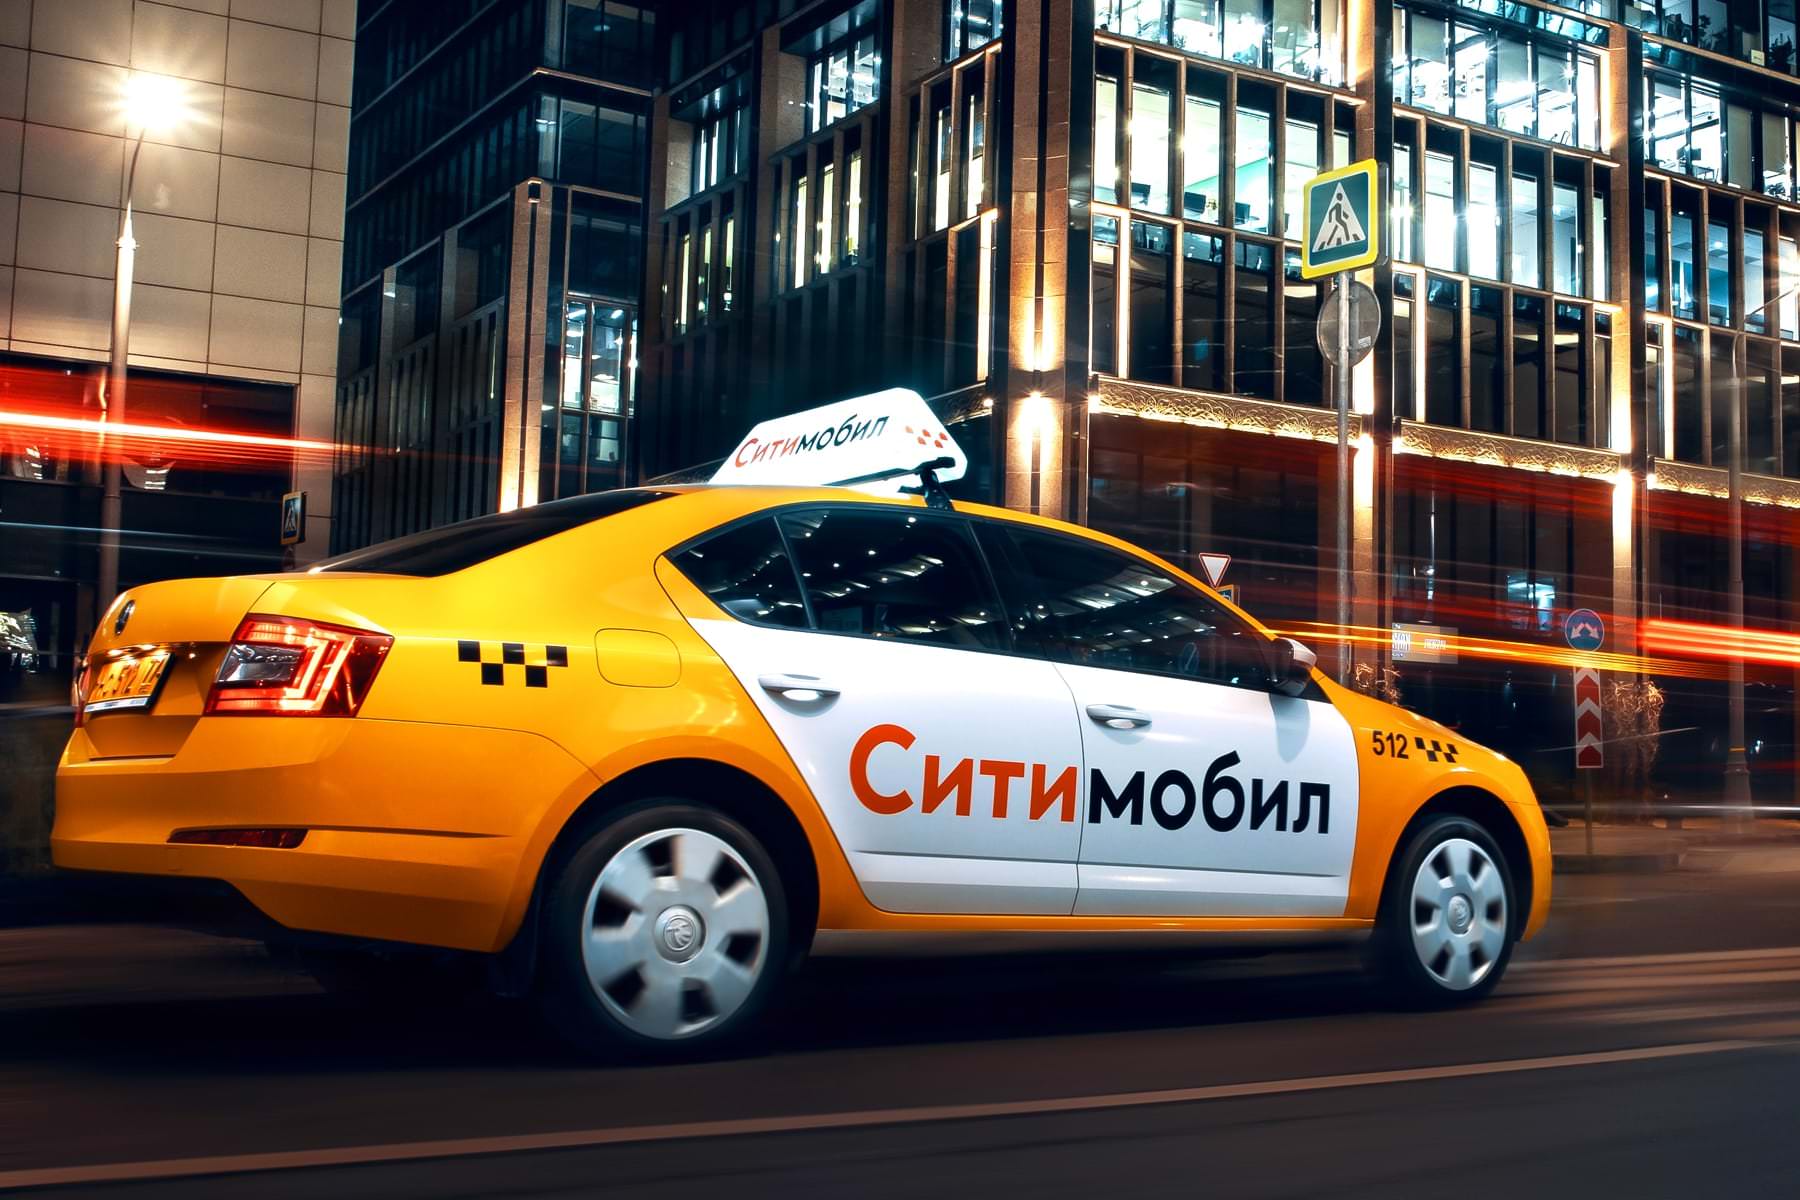 Заказать такси сити. Такси Сити мобил 2022. Ситимобил новый. Автомобили таксопарка Ситимобил. Брендирование автомобилей Ситимобил.